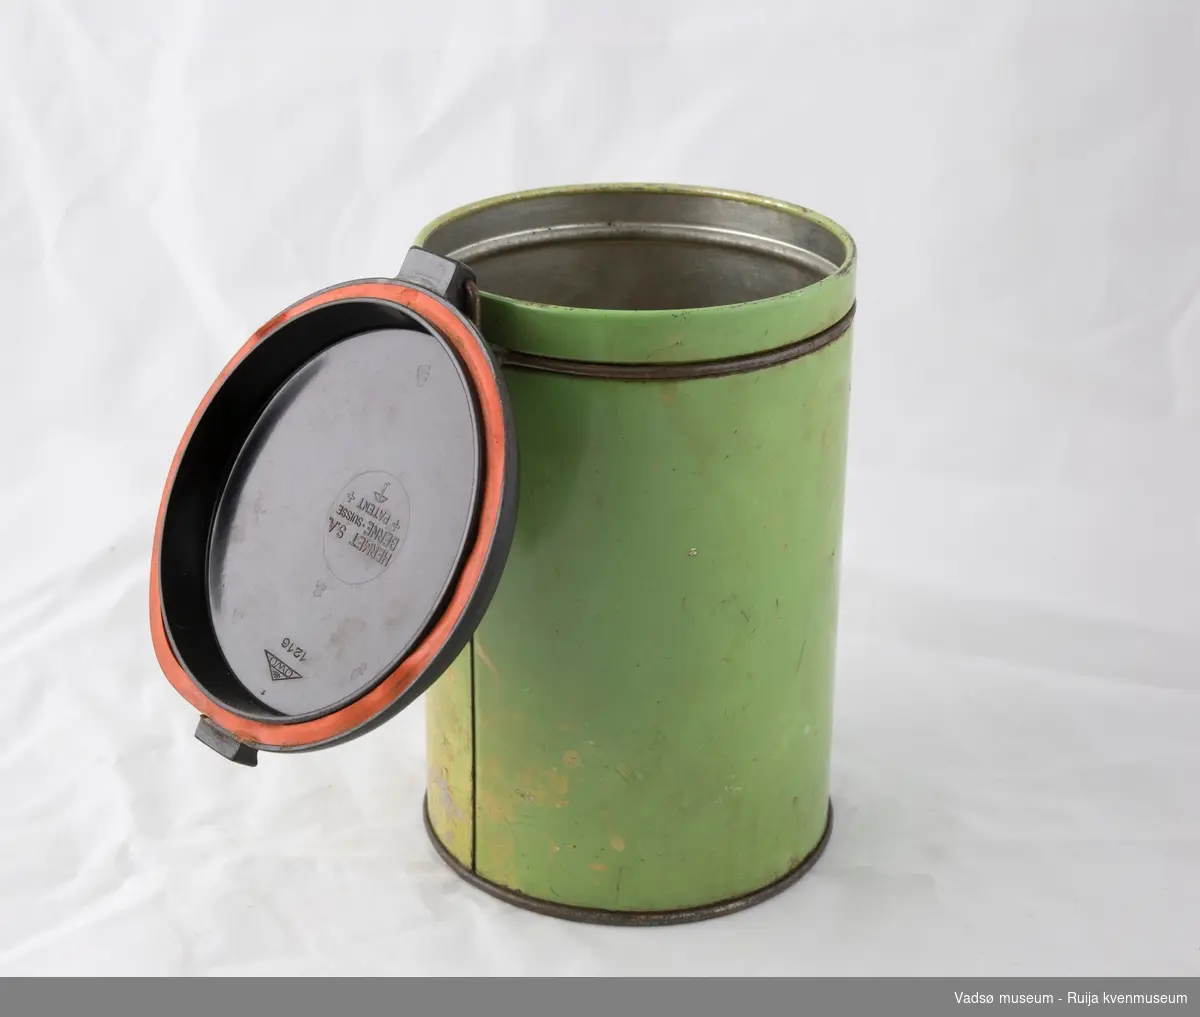 Sylinderformet kaffeboks i metall med hengslet plastlokk. Enkel låsemekanisme i metall i front. Lokket er i brun plast og utstyrt med en gummipakning. Boksen er helfarget grønn utvendig, med påskriften "Kaffe"i svart i front.